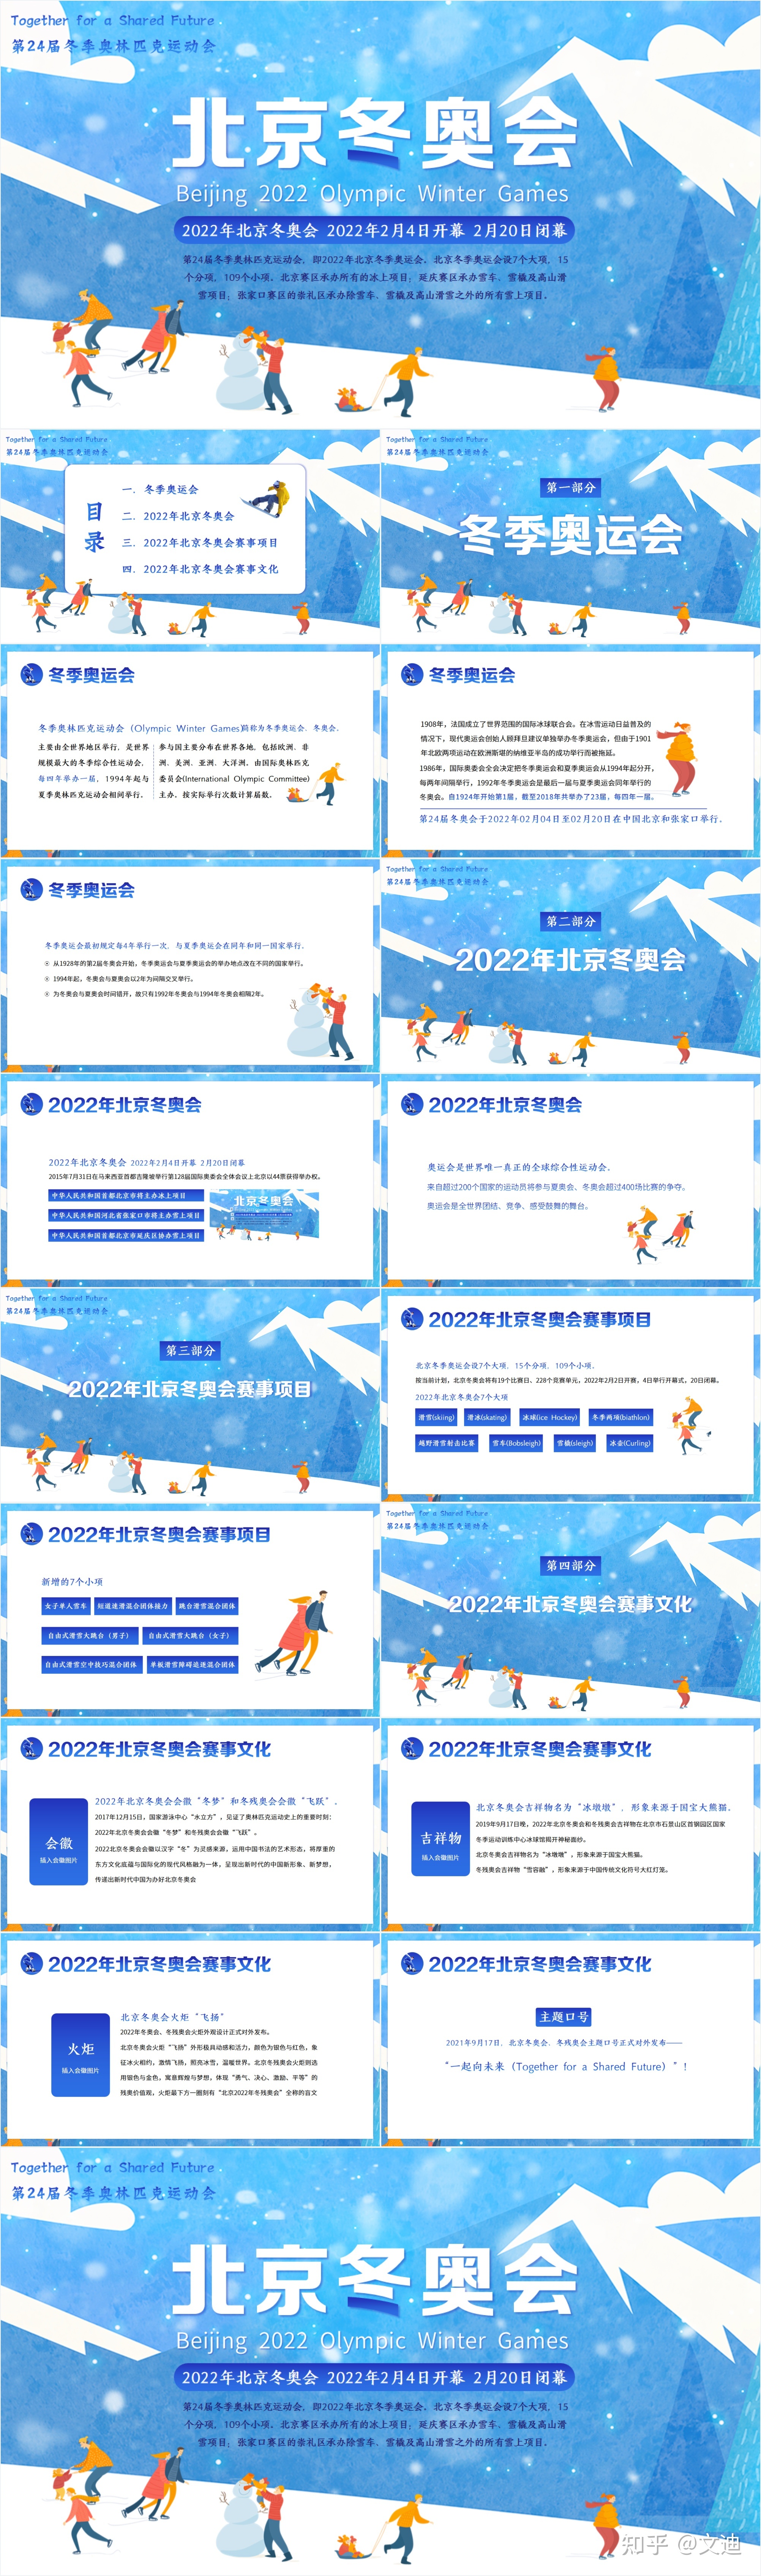 2022北京冬奥会的会徽是酱紫的_北京申办2022冬奥_北京2022冬奥会 宣传片